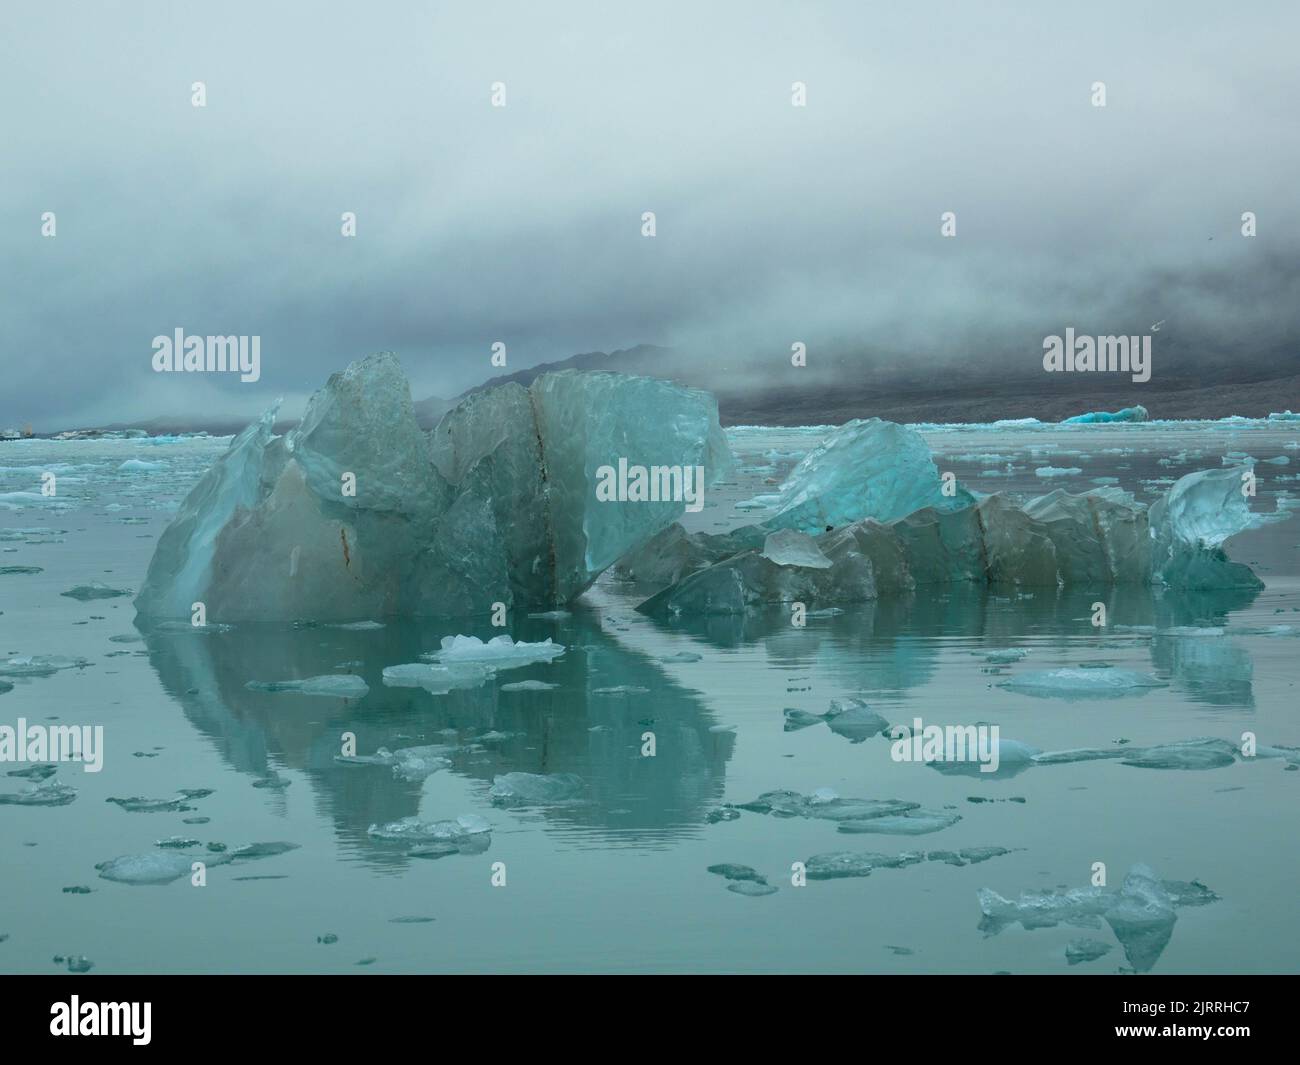 Iceberg d'un glacier en fusion dans l'arctique. Le paysage glacé de la nature arctique. Concept du changement climatique et du réchauffement de la planète. Océan polaire. Banque D'Images